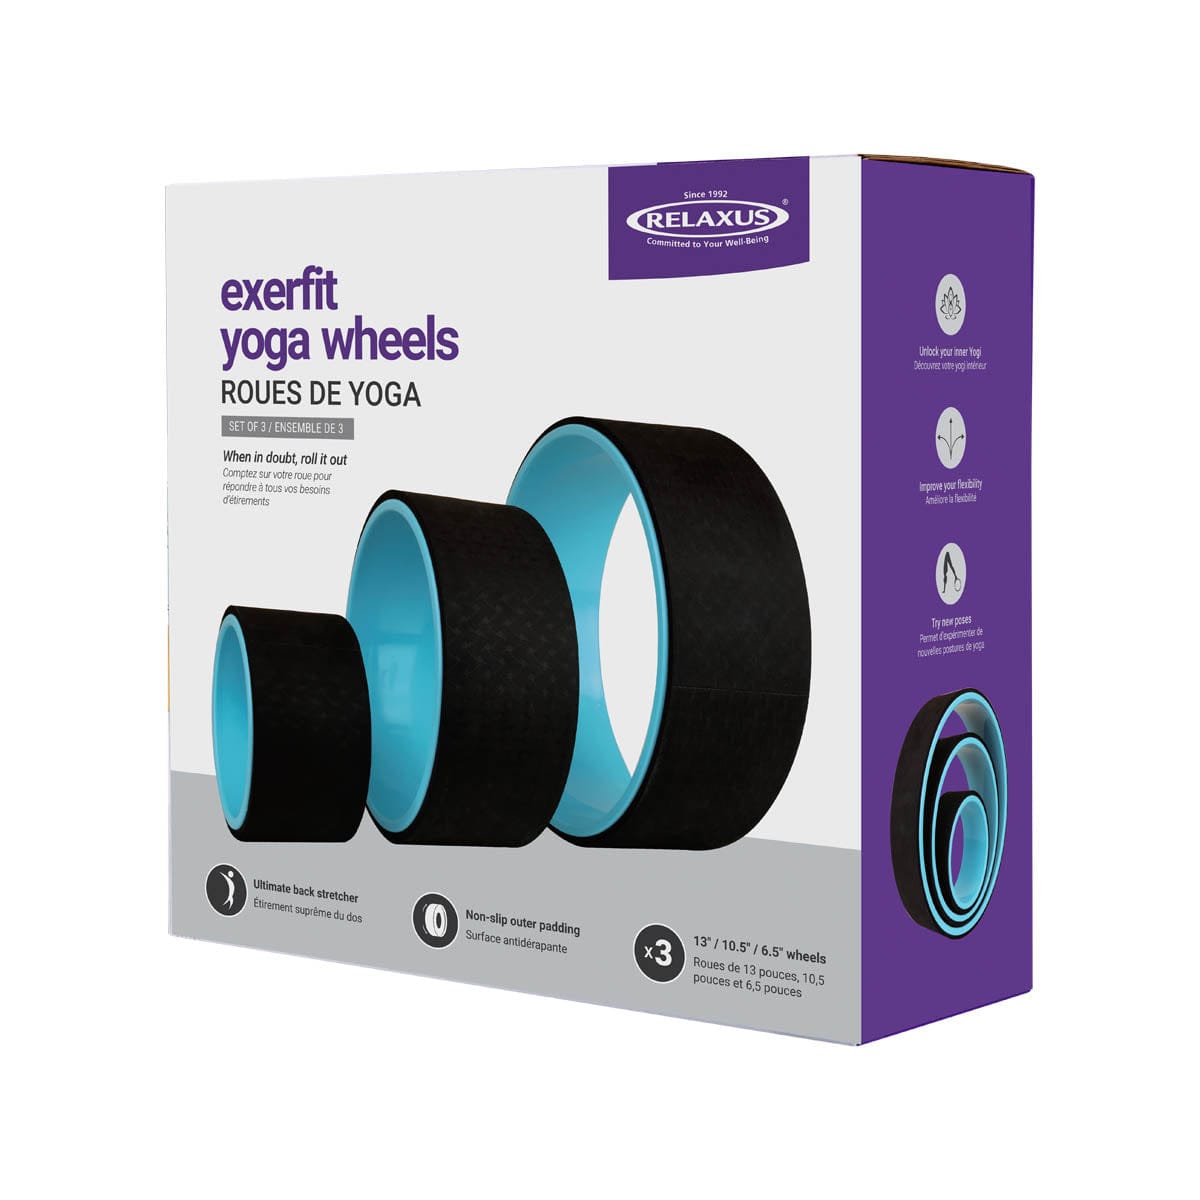 Exerfit Yoga Wheels box